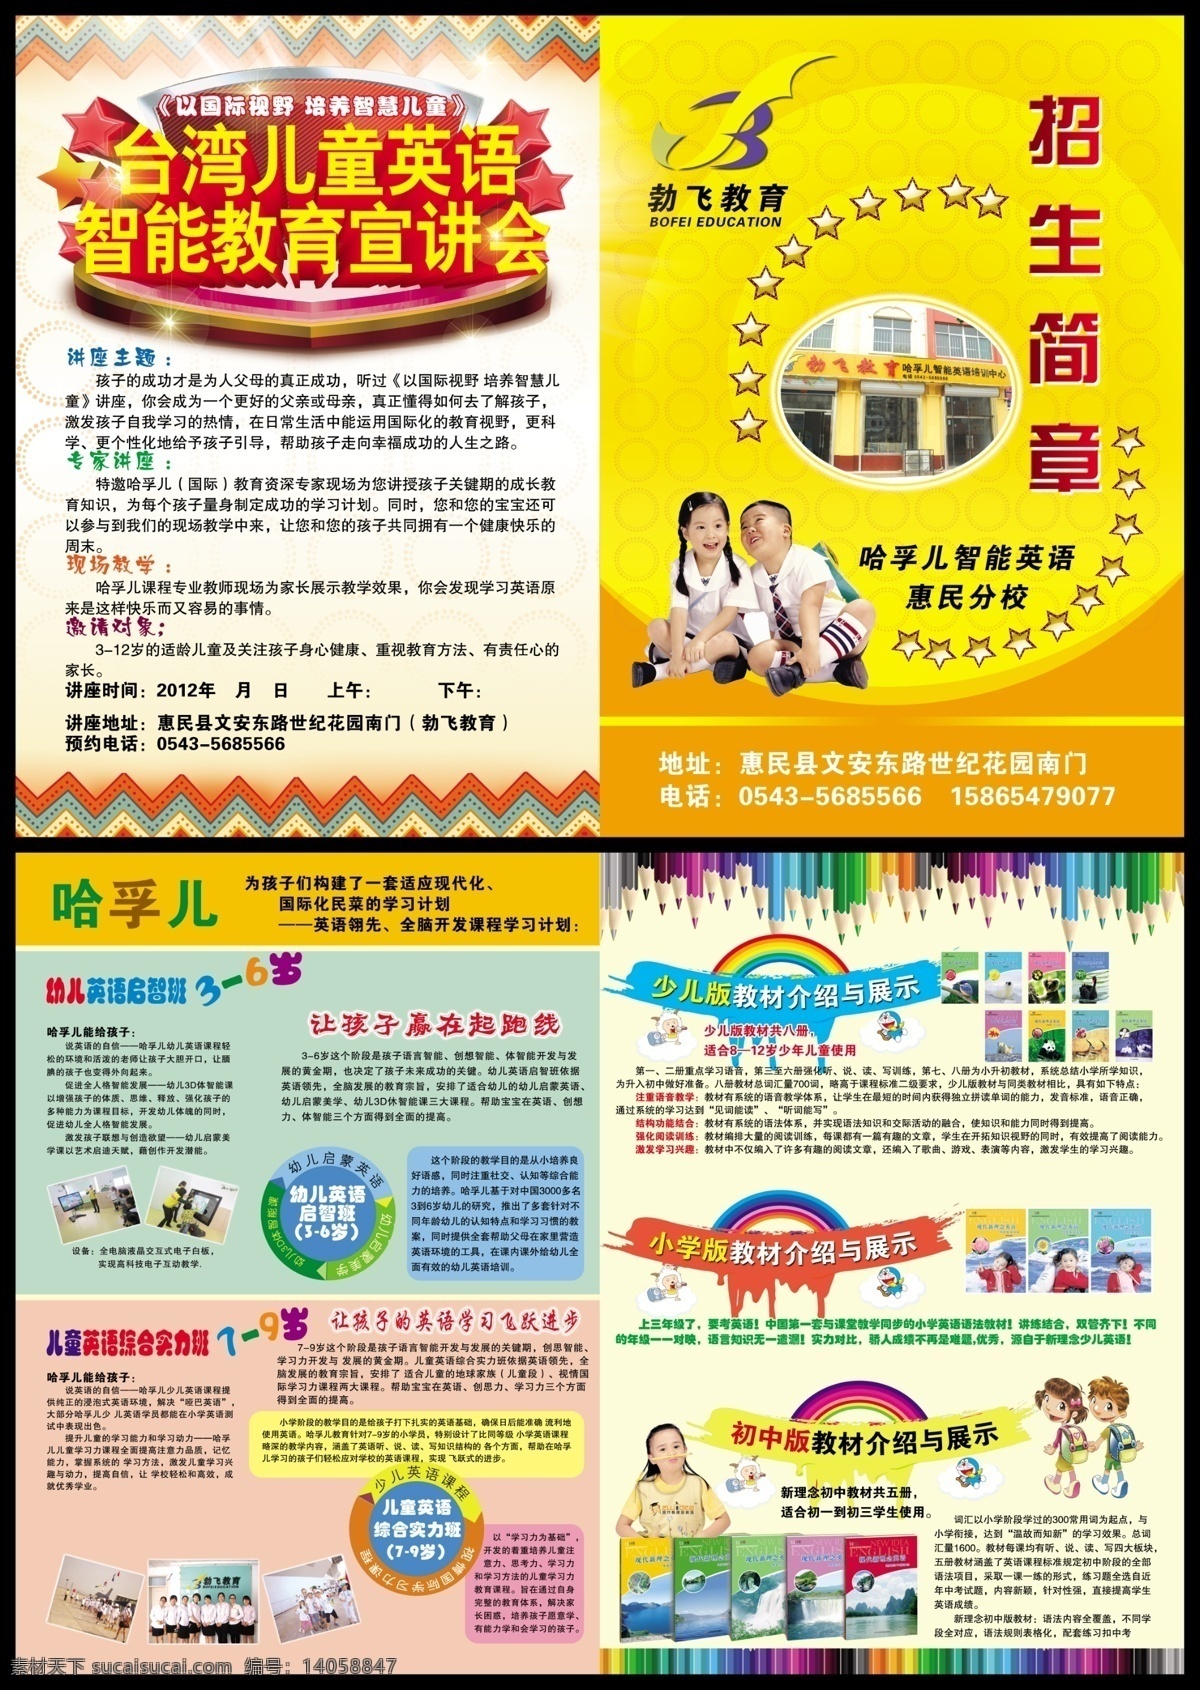 台湾儿童英语 智能 教育 宣讲会 设计培训班 实习基地 常年招生 黄色